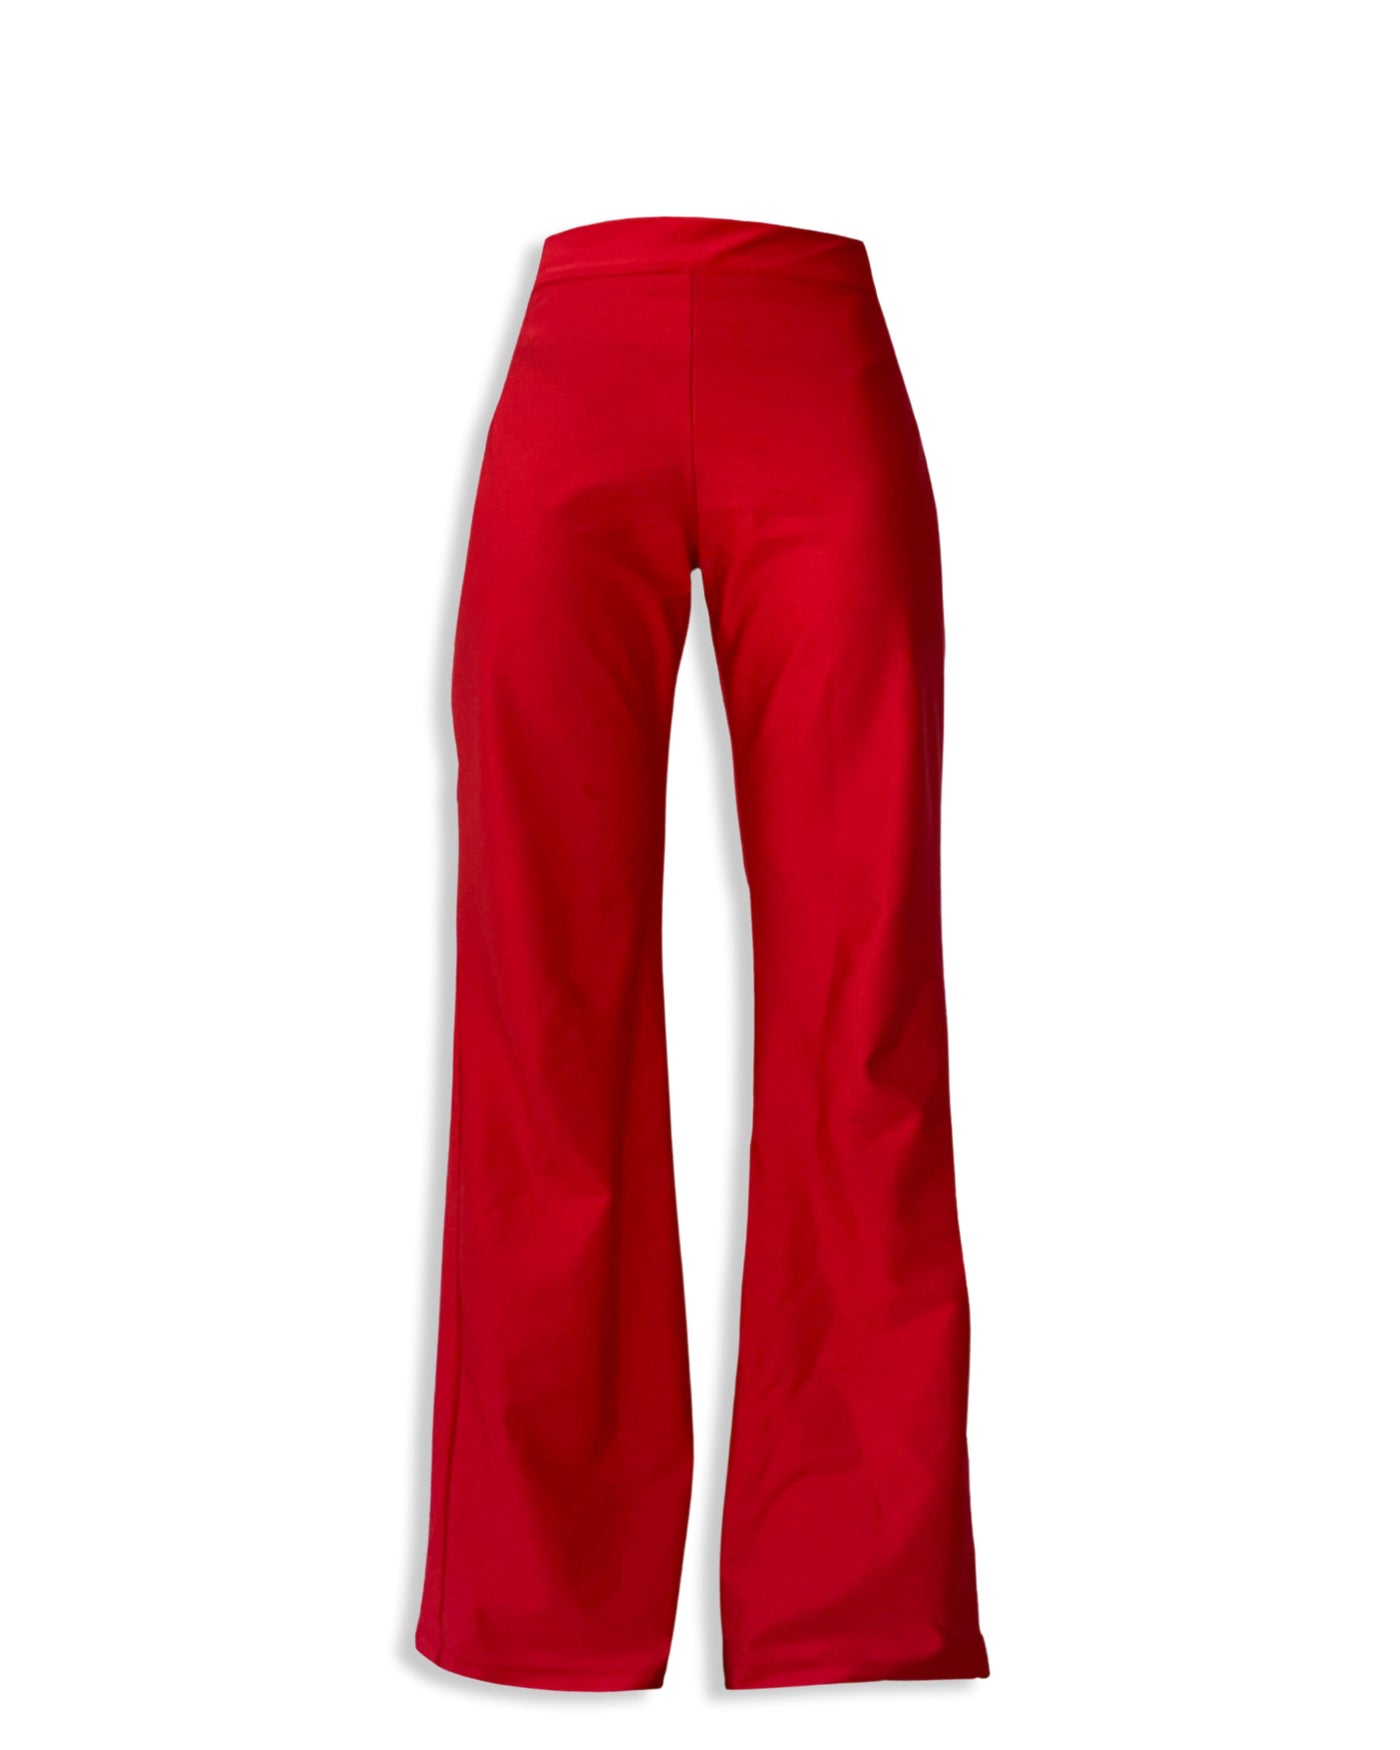 Pantalon Billy rouge IKA - 38